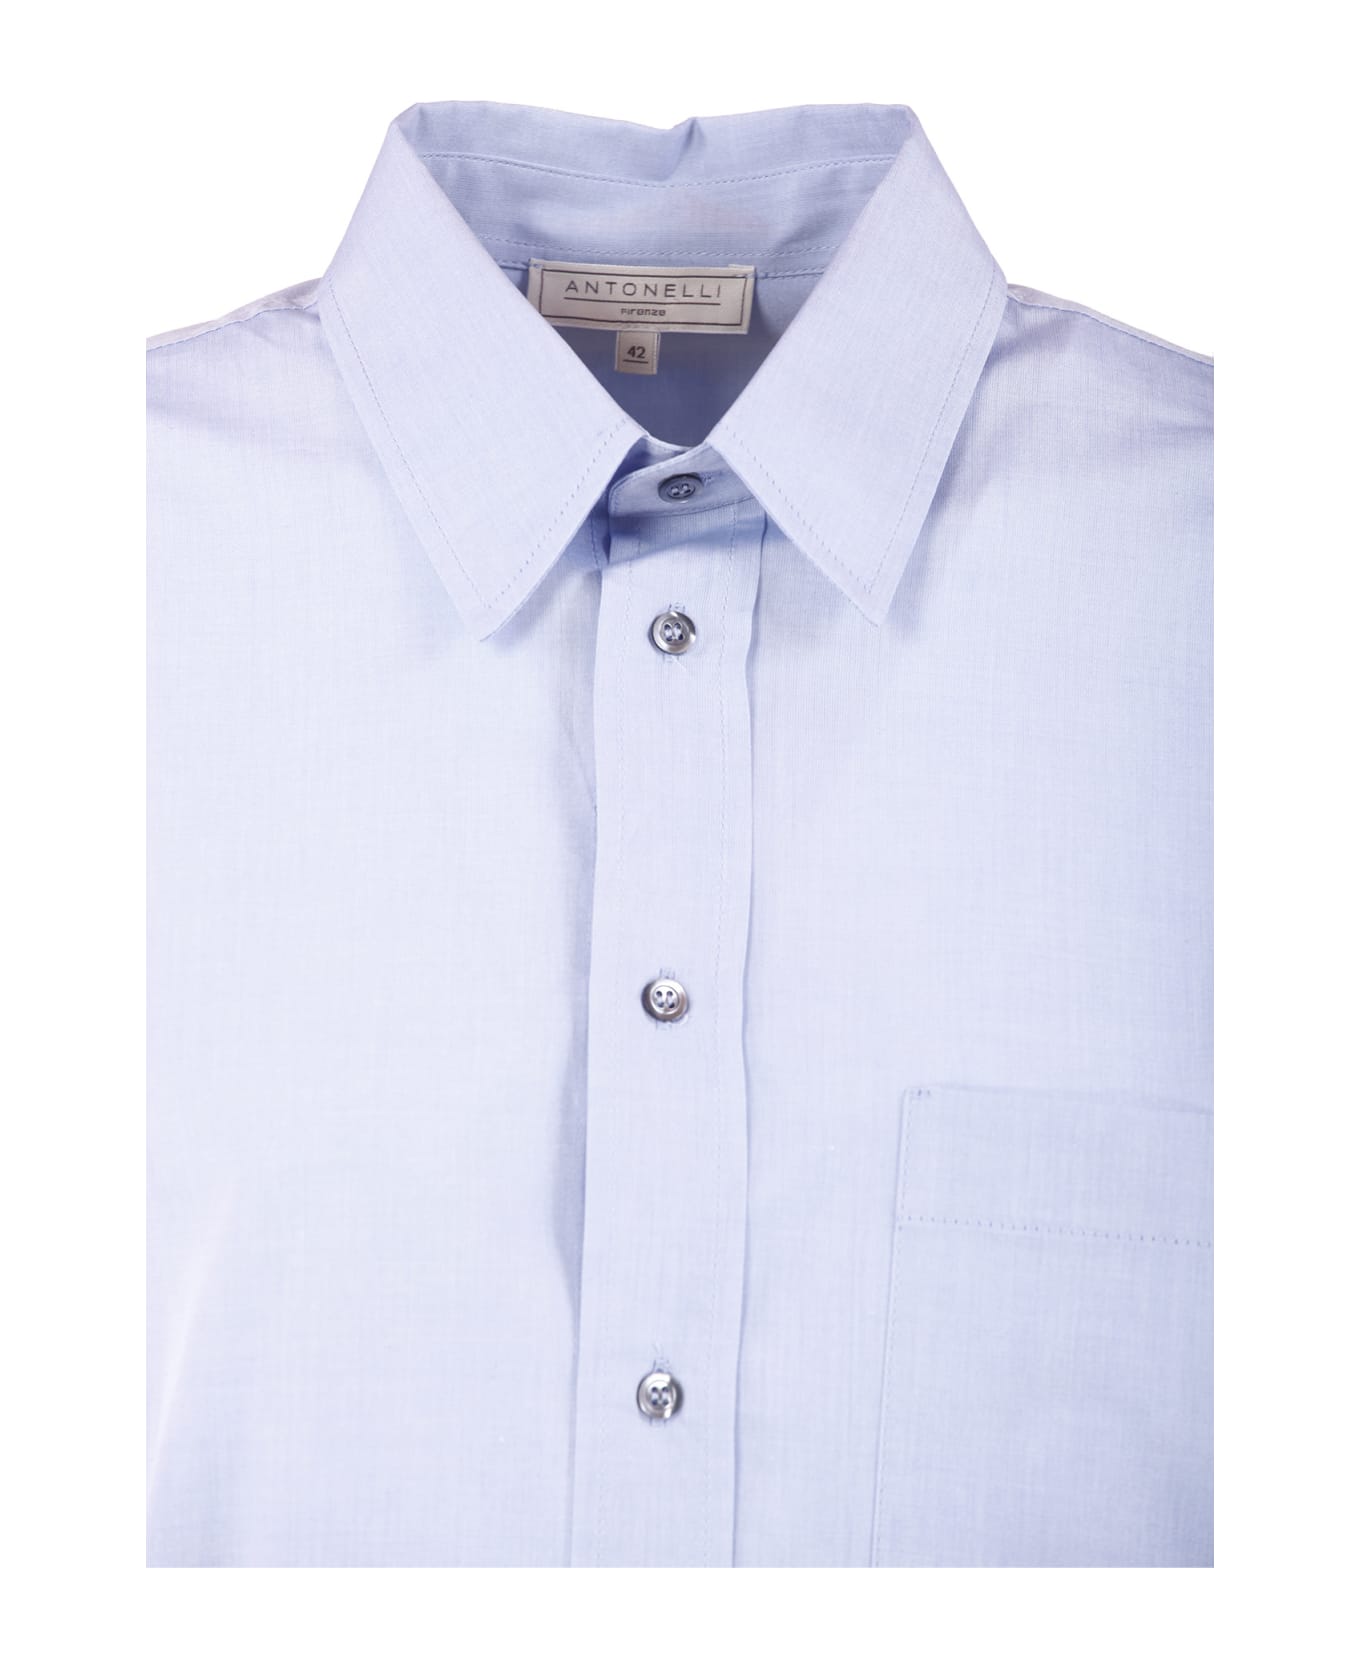 Antonelli Firenze Shirts Light Blue - Light Blue シャツ